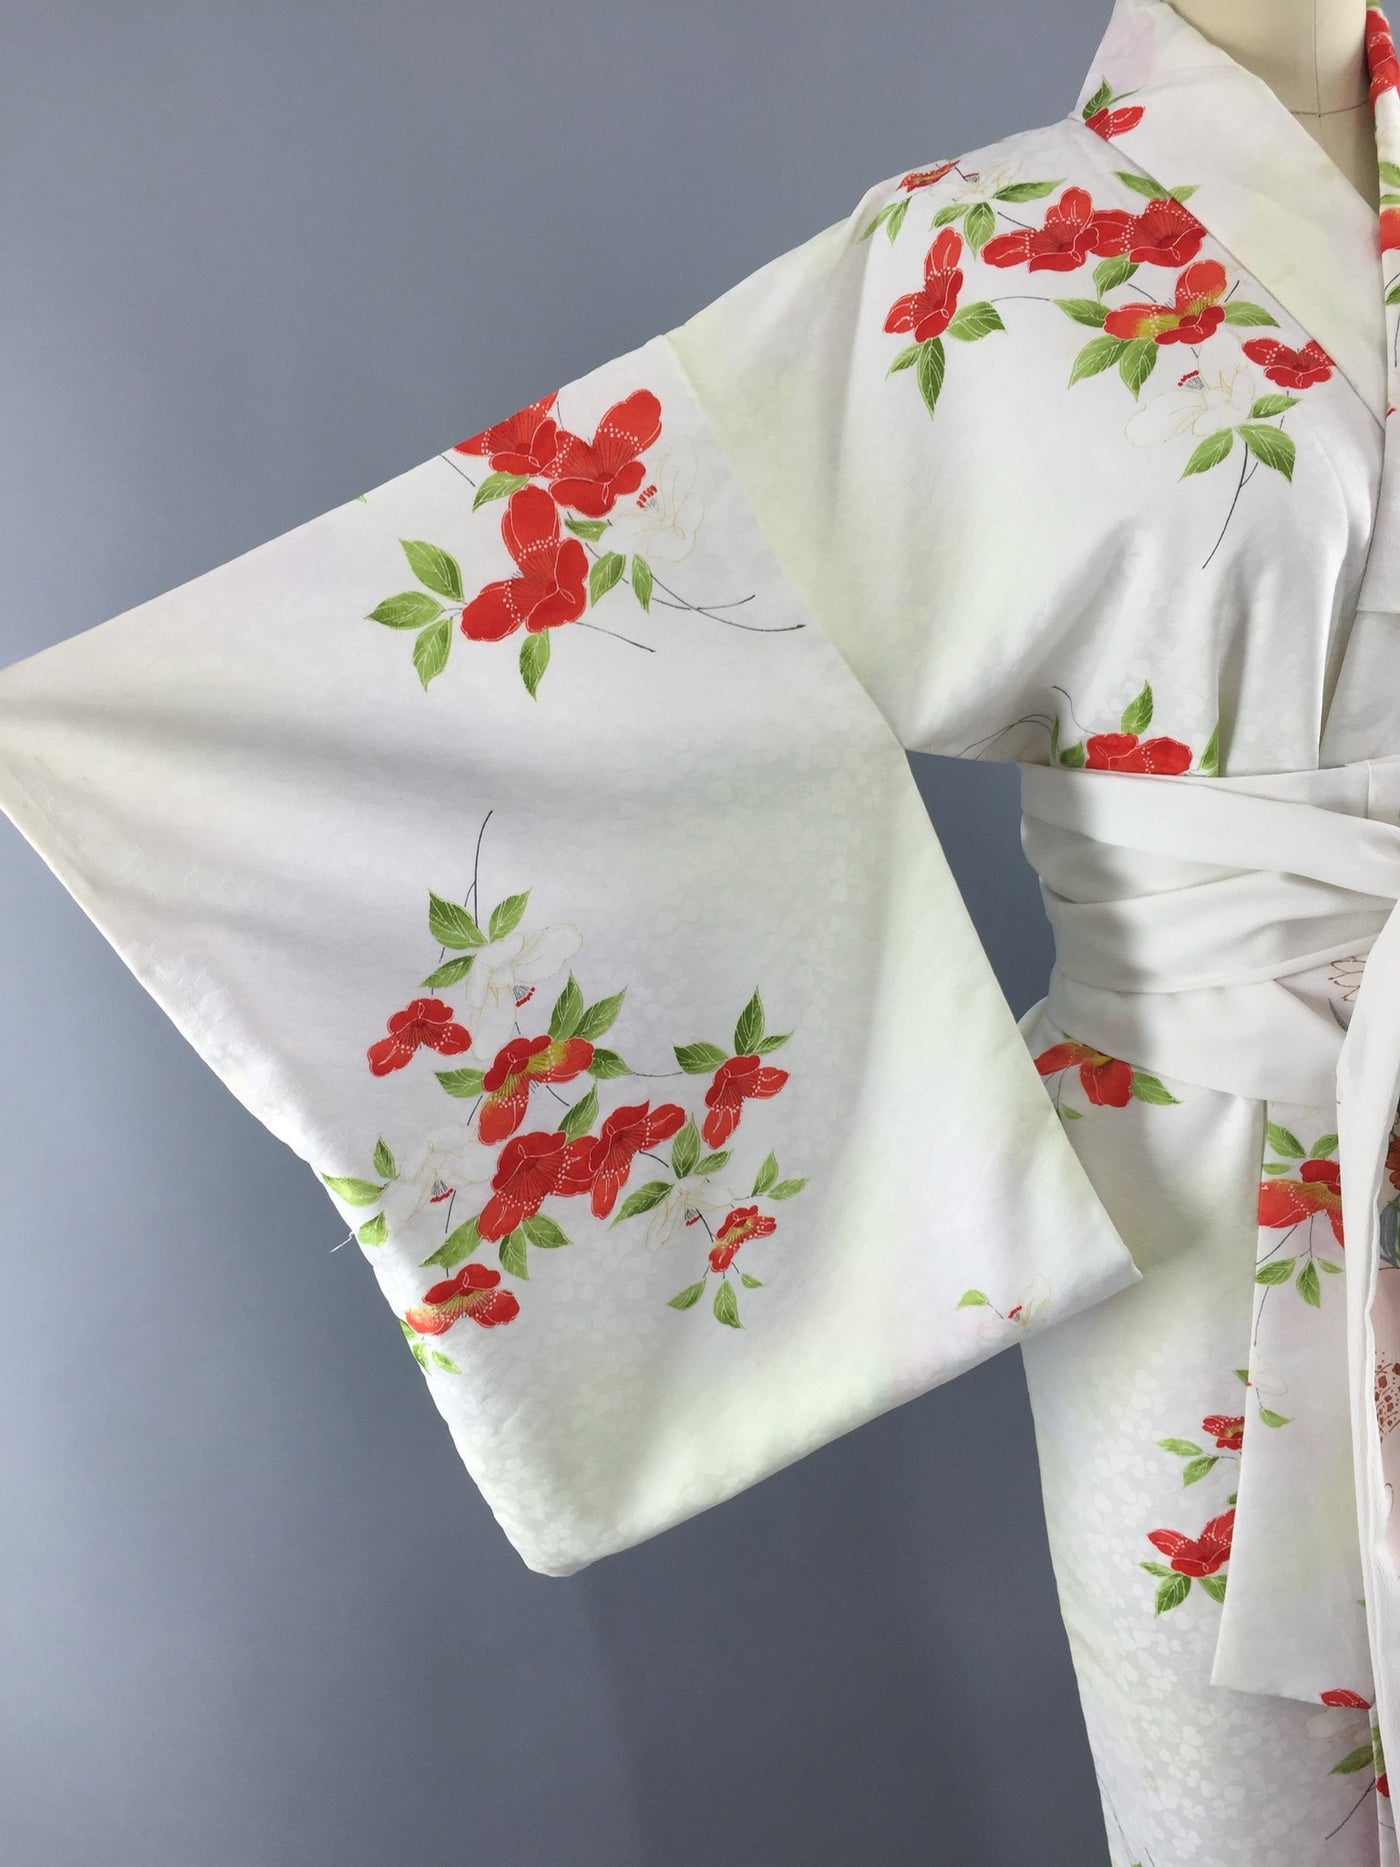 Vintage 1980s Kimono Robe / Red White Floral Print - ThisBlueBird